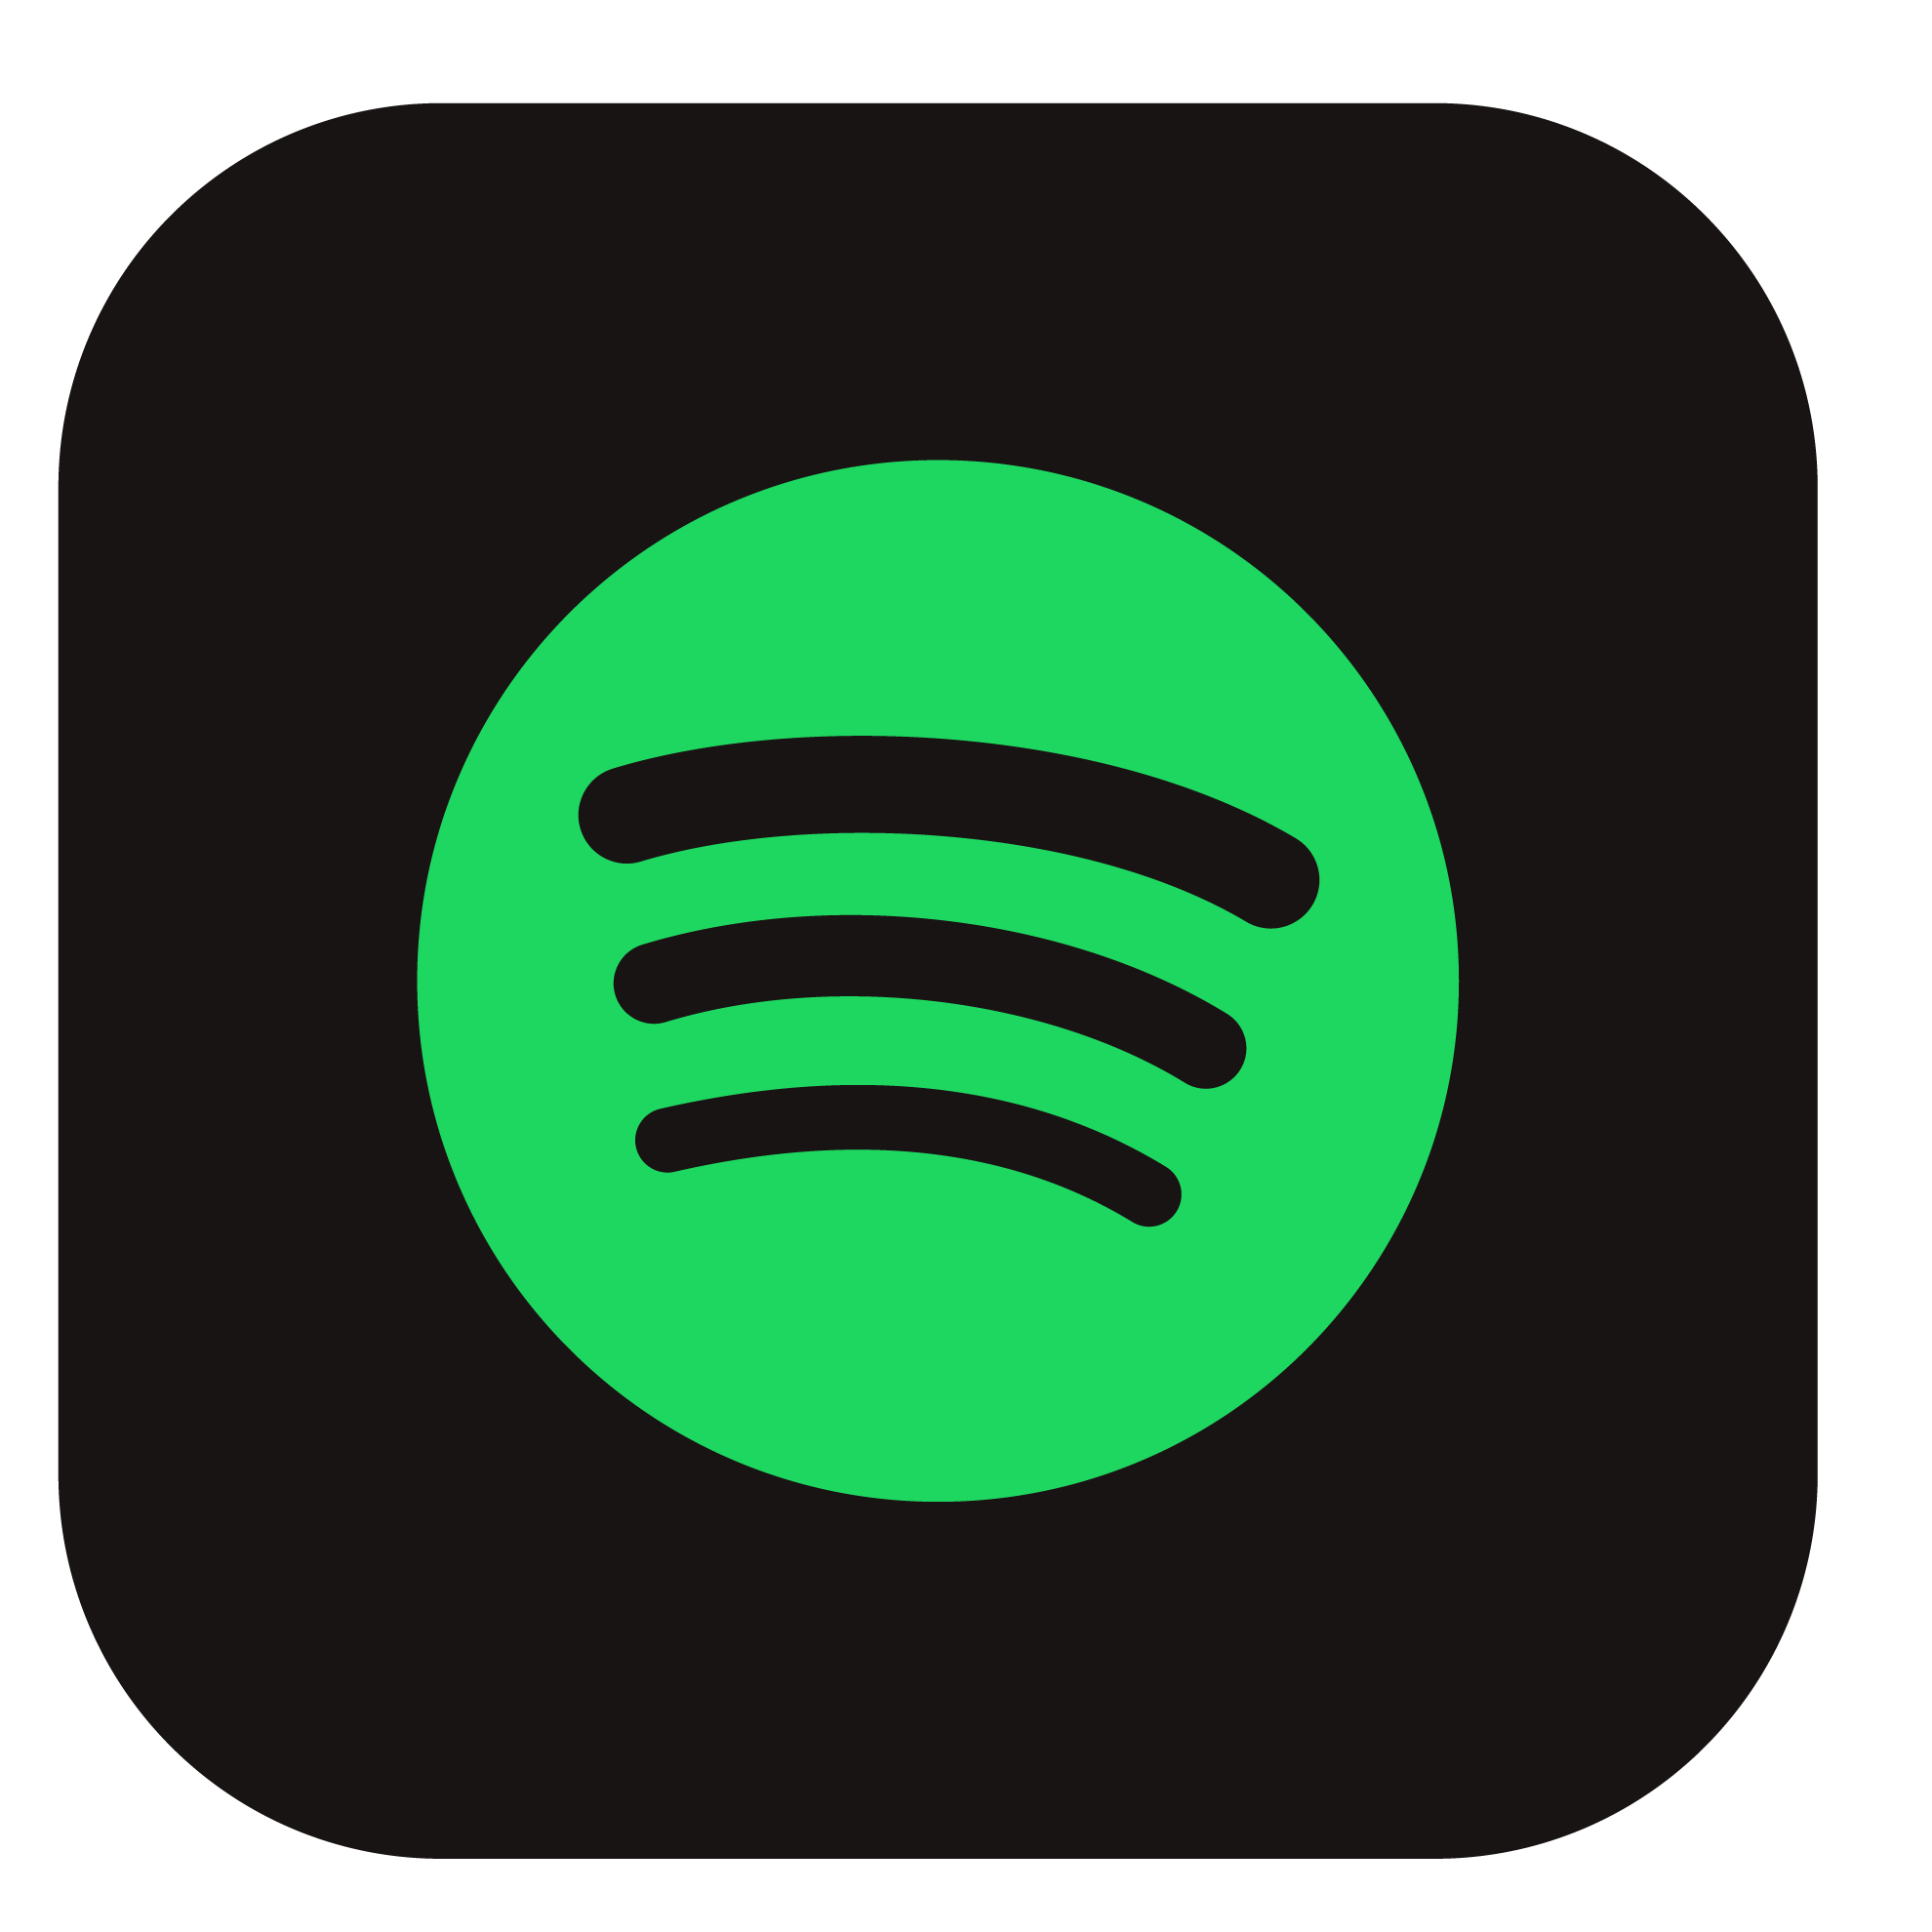 App de música Spotify incluido en tu recarga móvil